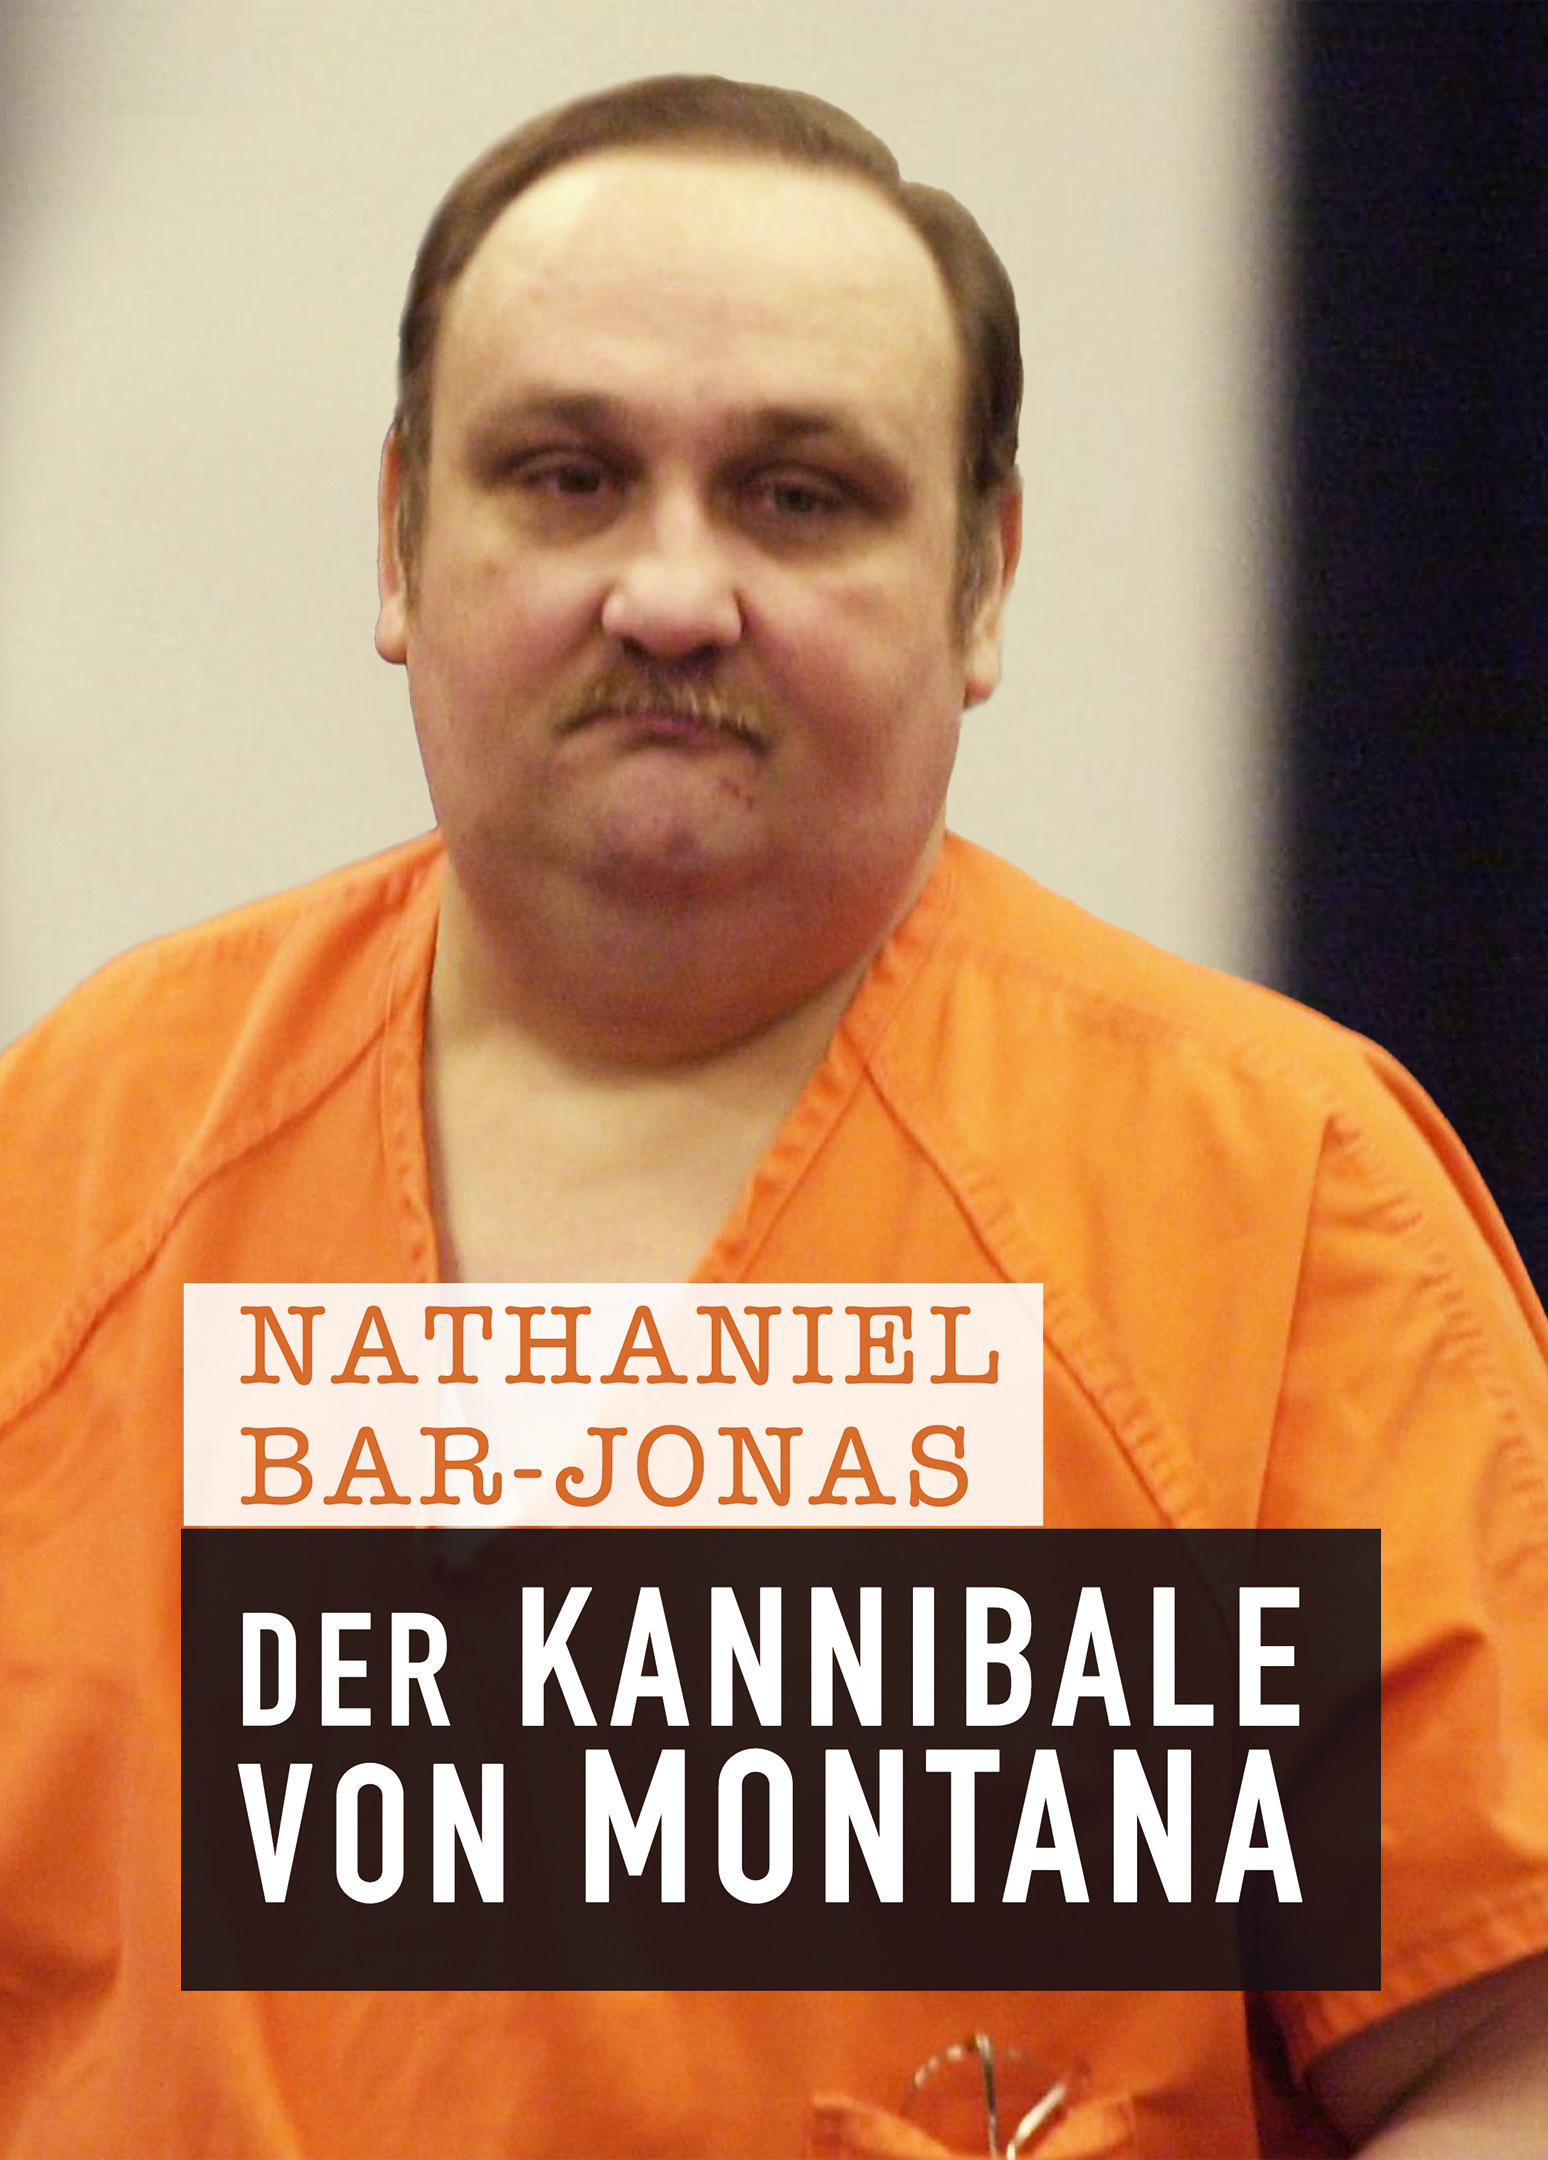 Nathaniel Bar-Jonah: Der Kannibale von Montana